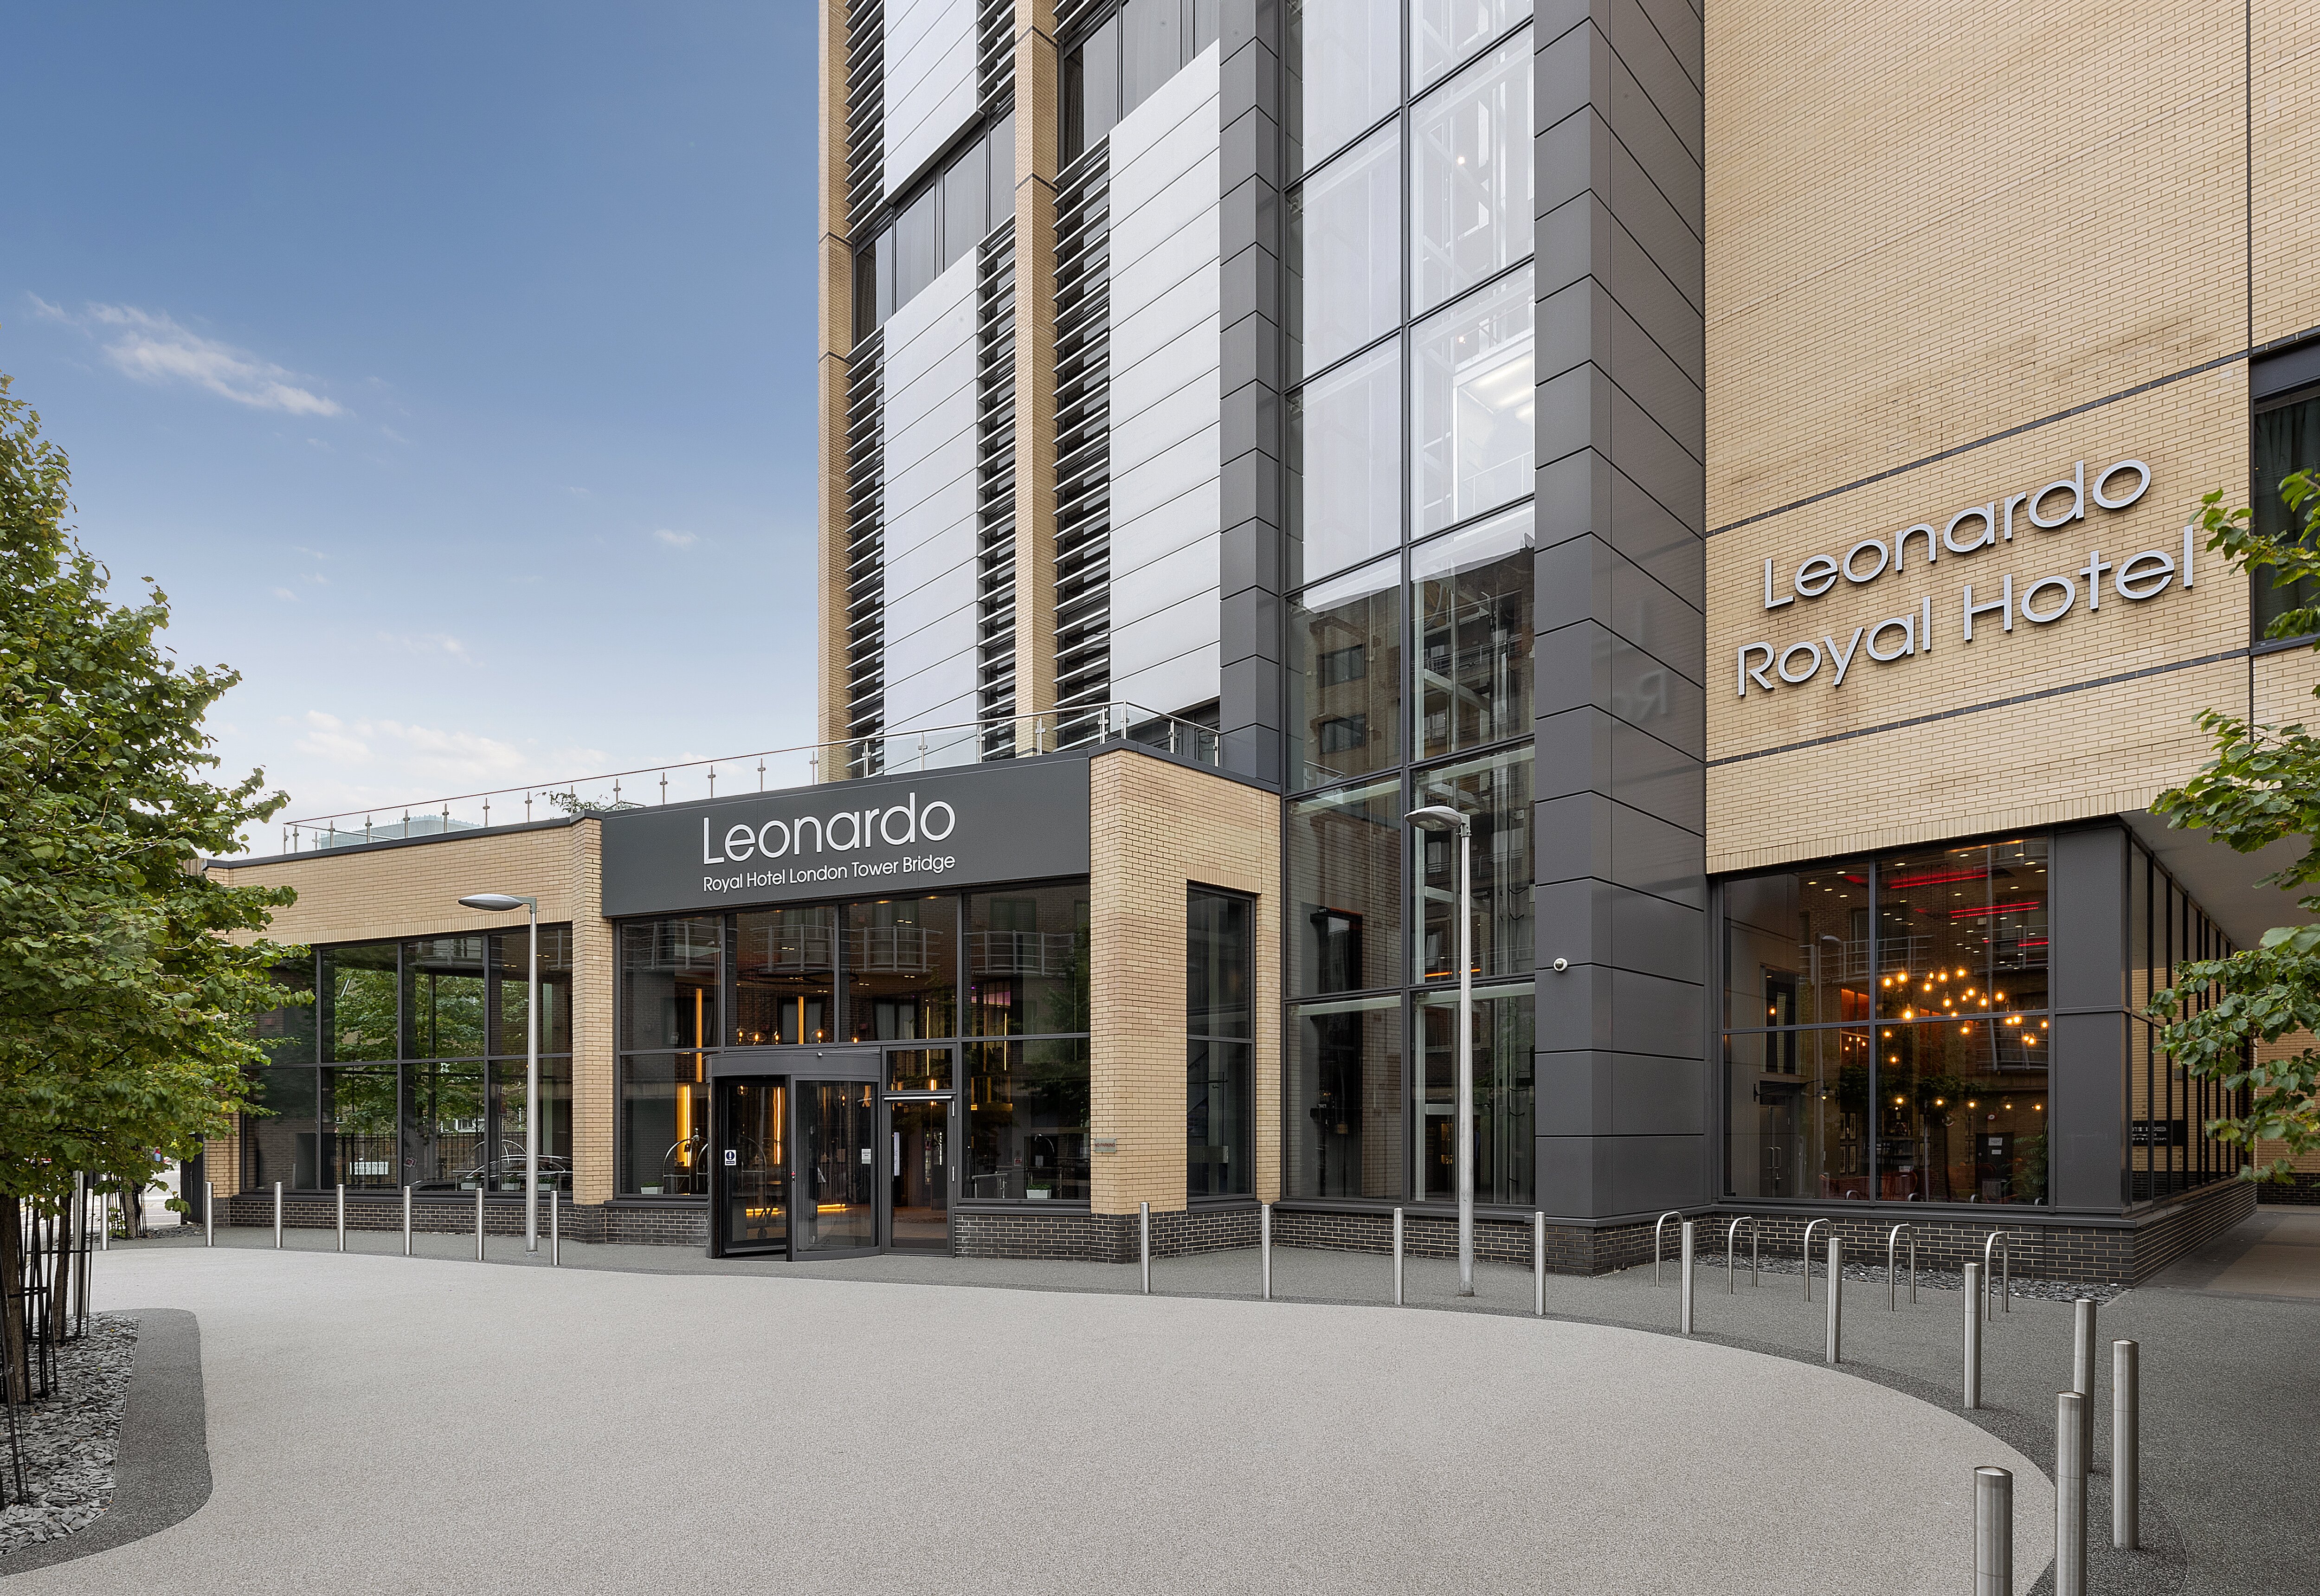 Jurys Inn chain to be rebranded as Leonardo hotels